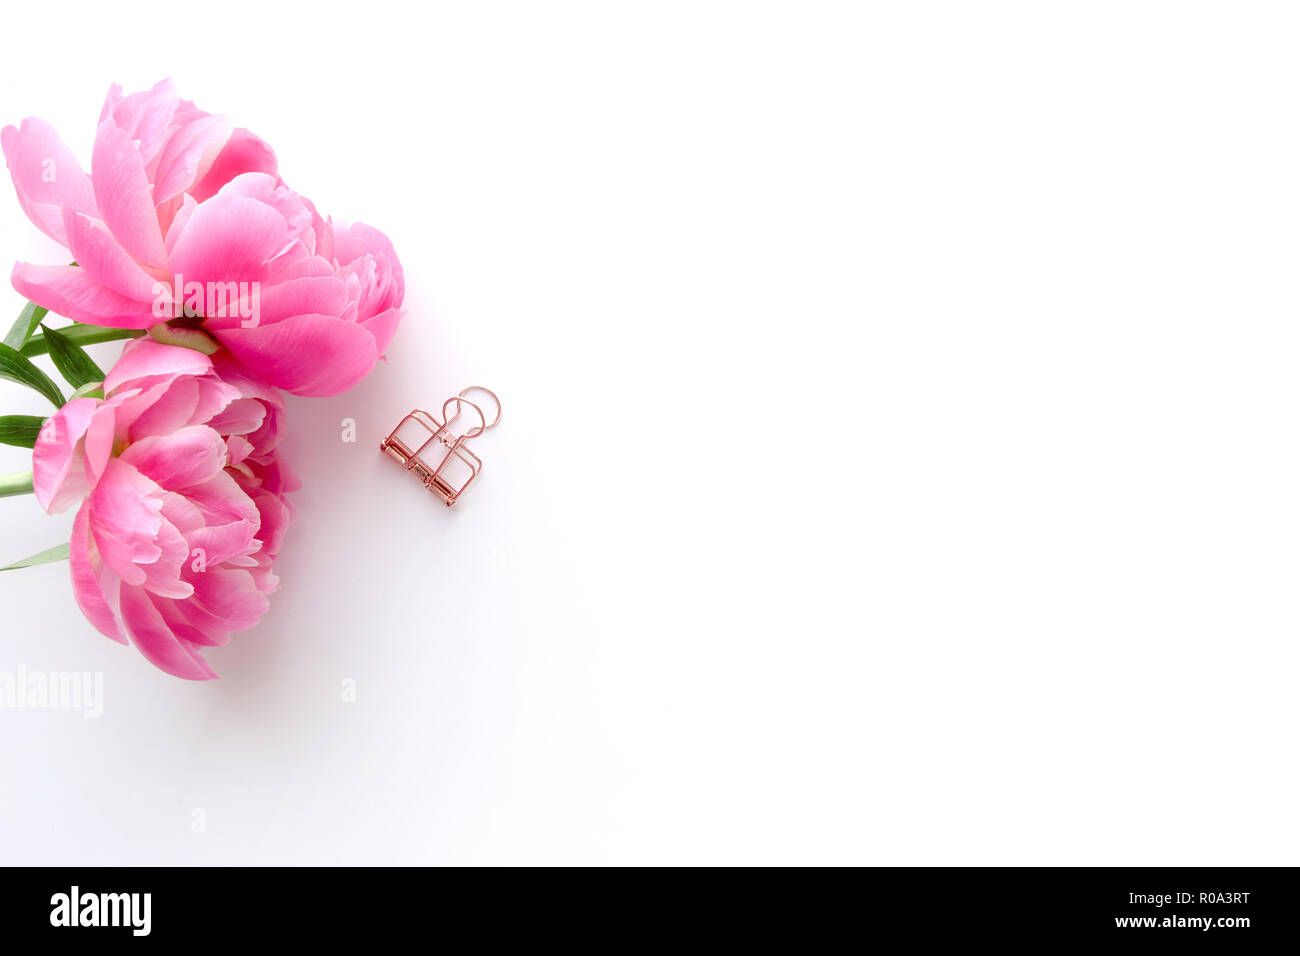 Femminile, foto in stile con il rosa peonie. Flatlay. Per i blogger e le imprese creative. Con uno spazio bianco per il testo o per prodotto. Foto Stock